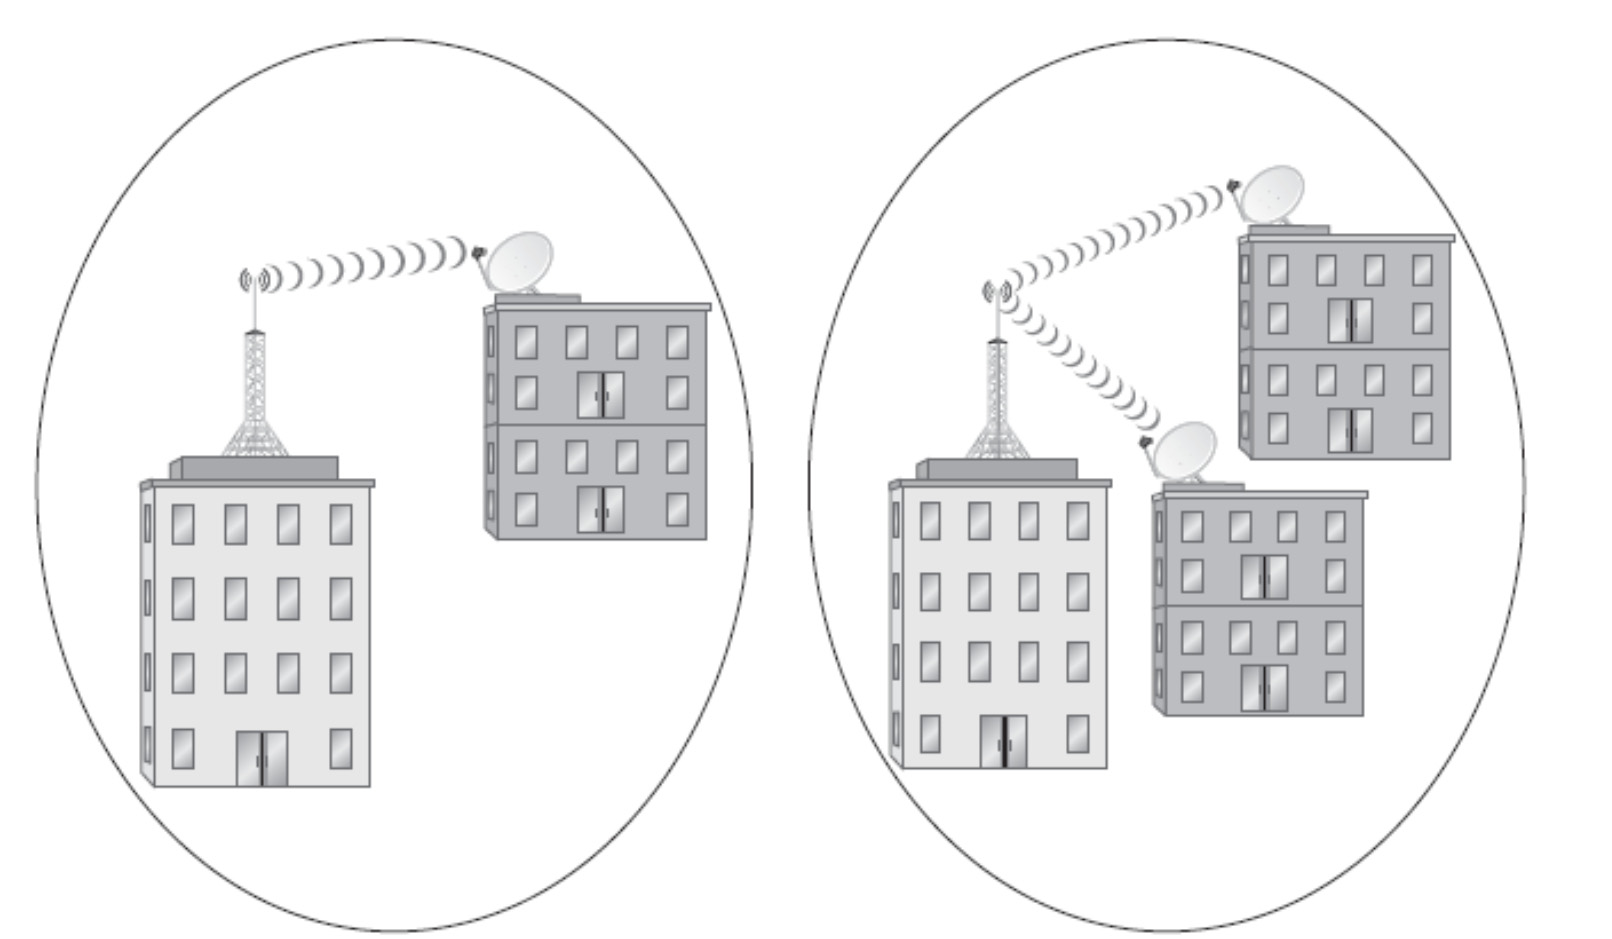 Αρχιτεκτονική LMDS δικτύου (ΙΙ) Μετάδοση μόνο σε σταθερά σημεία (κτίρια, κτλ) Αποτελείται από κυψέλες Βασικοί παράγοντες για